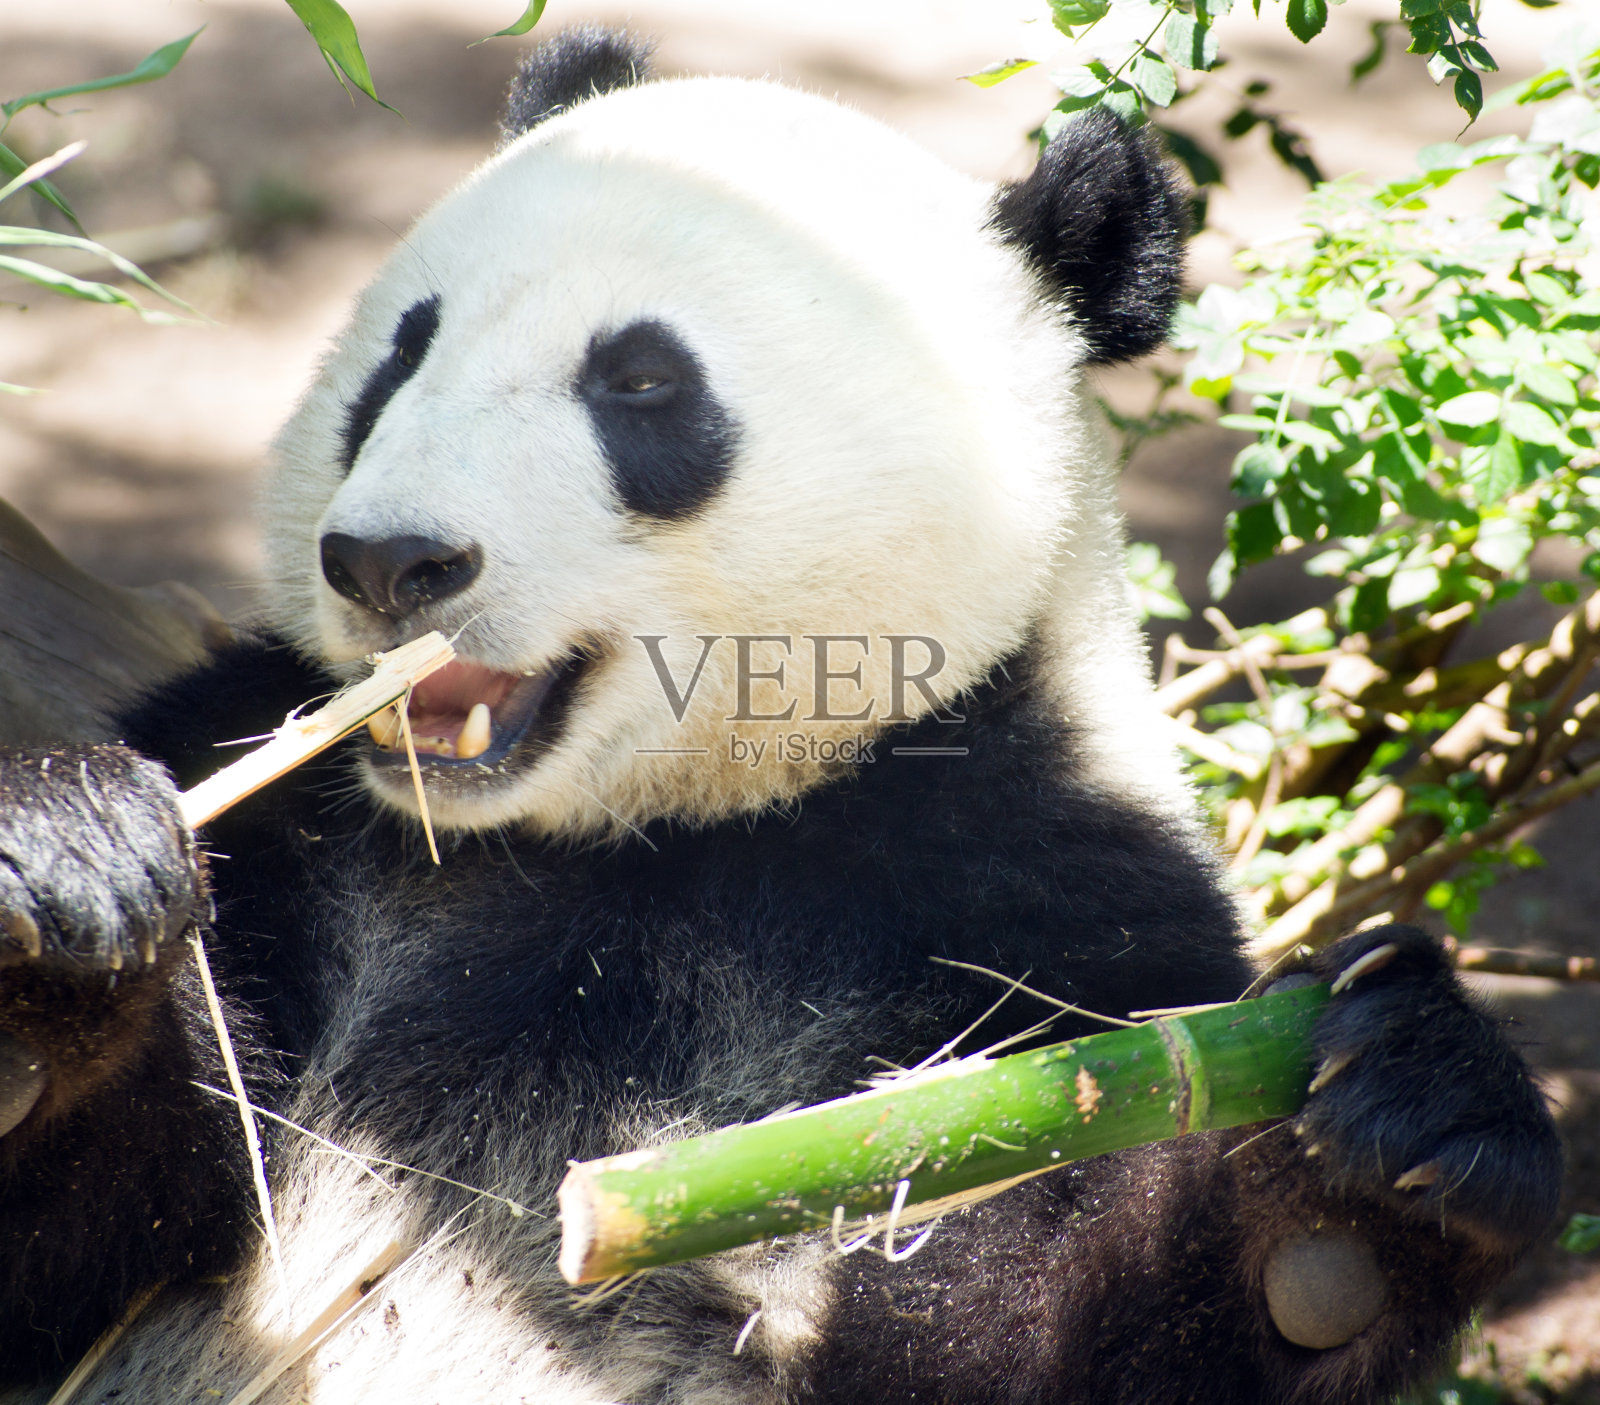 濒危动物野生动物大熊猫吃竹茎照片摄影图片